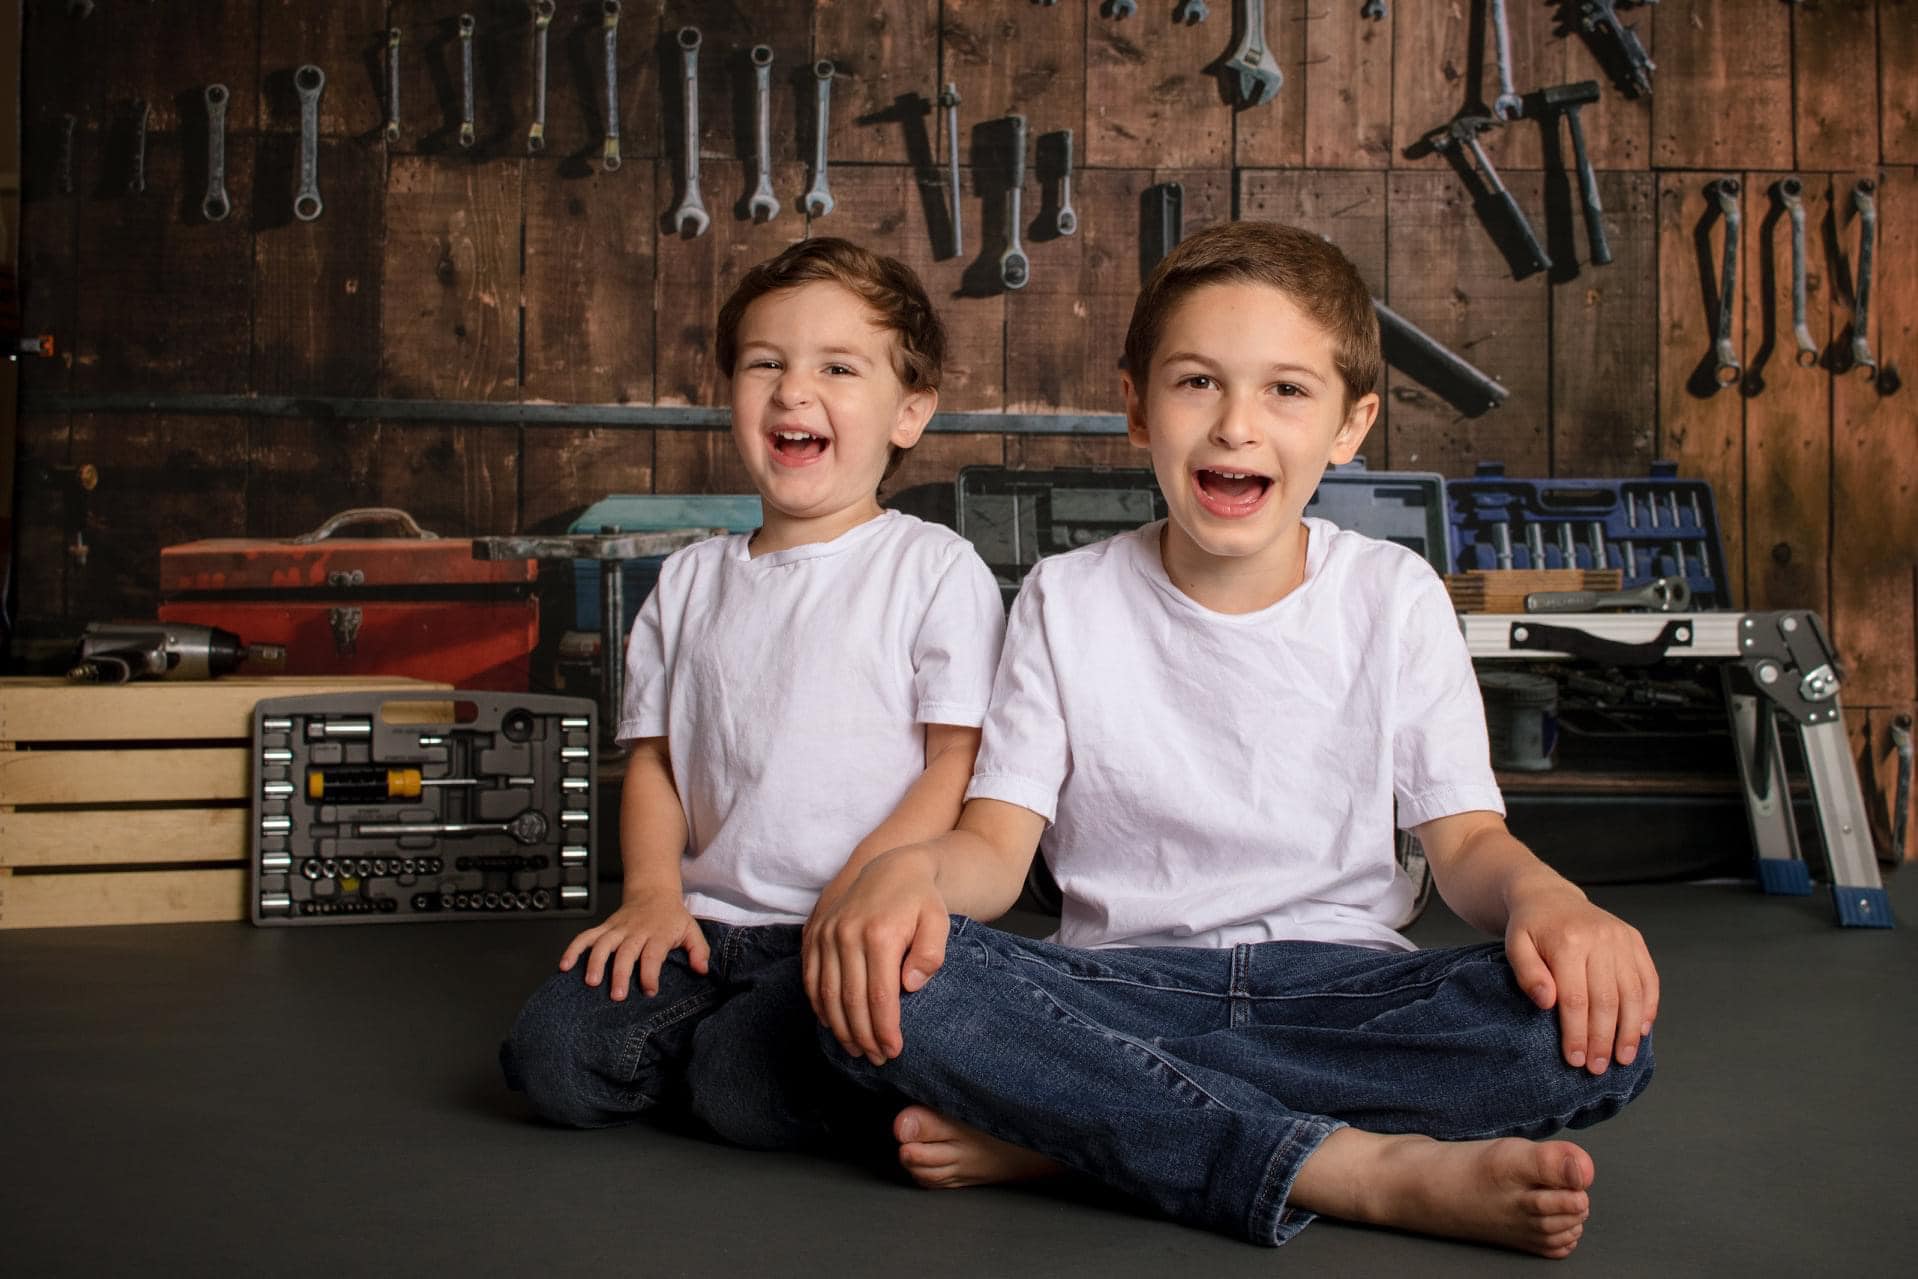 Kate Tool Regal Kinder Hintergrund für Jungen / Vatertag